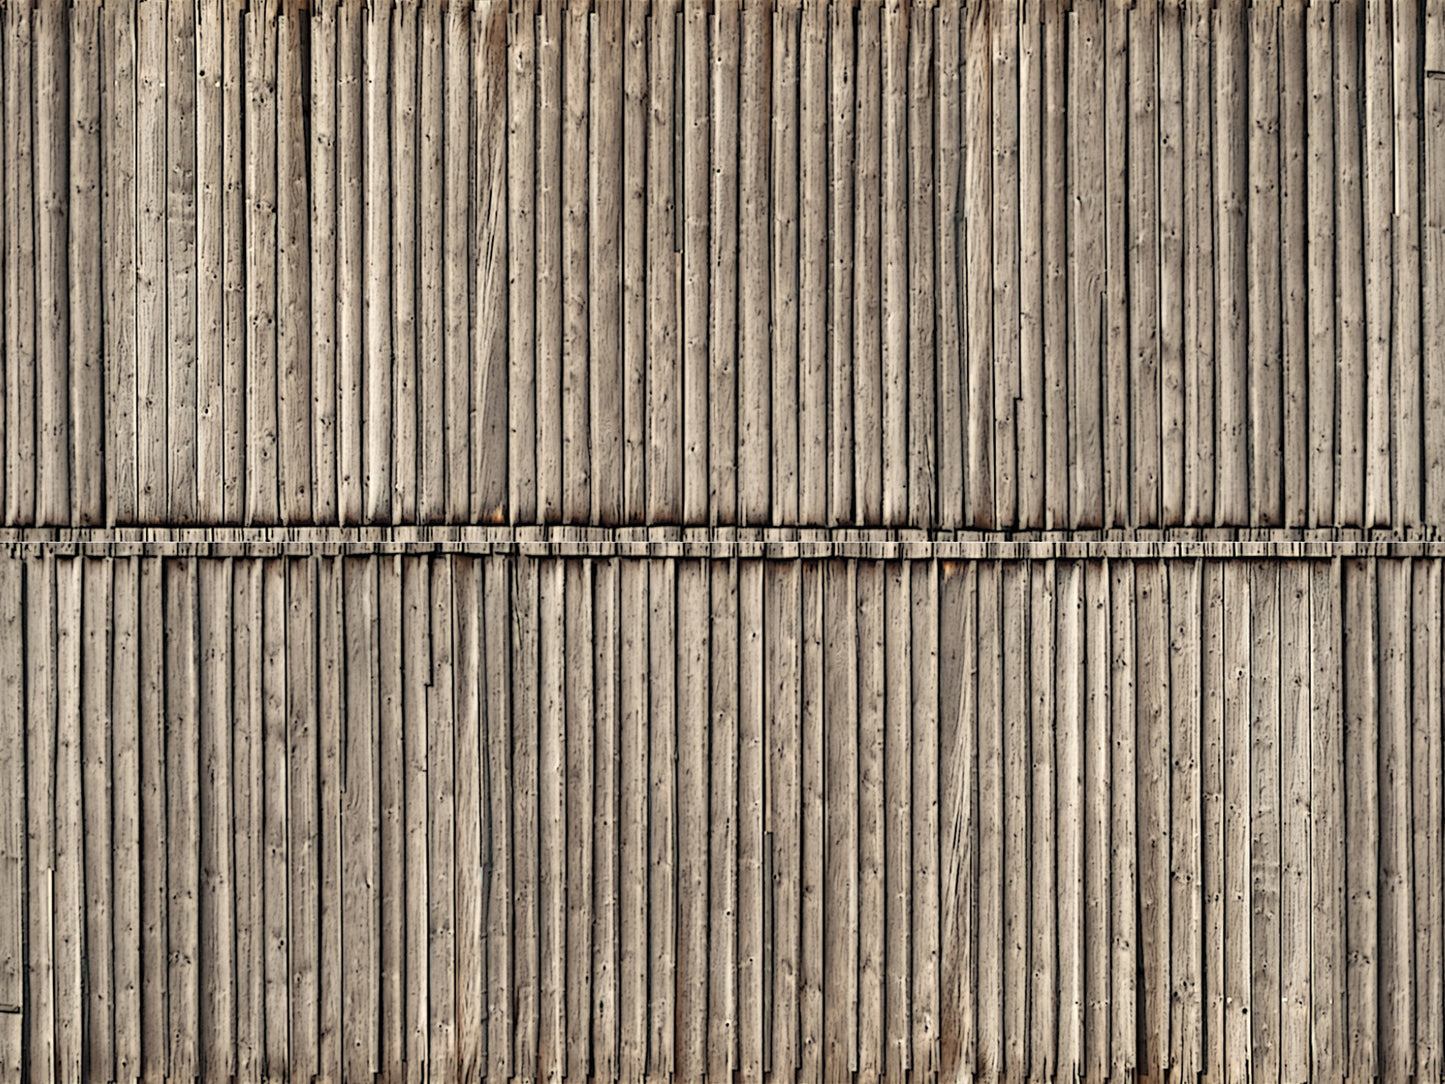 Noch 56664: 3D Cardboard Sheet “Timber Wall” (H0)